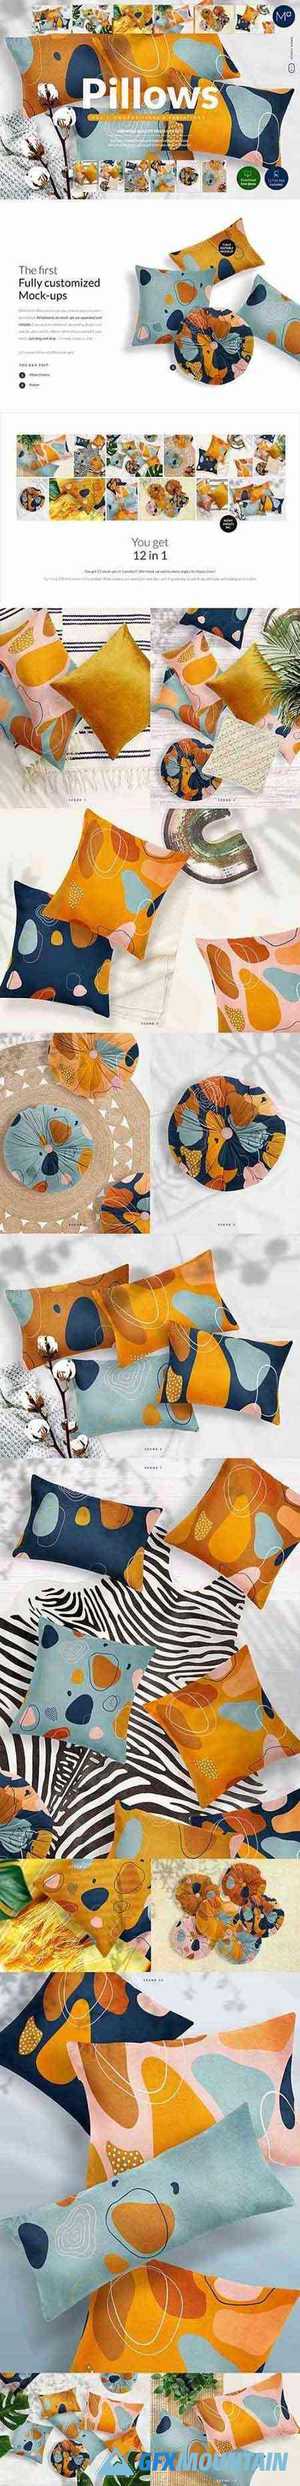 Pillows vol.2: Compositions Mock-ups 5248045